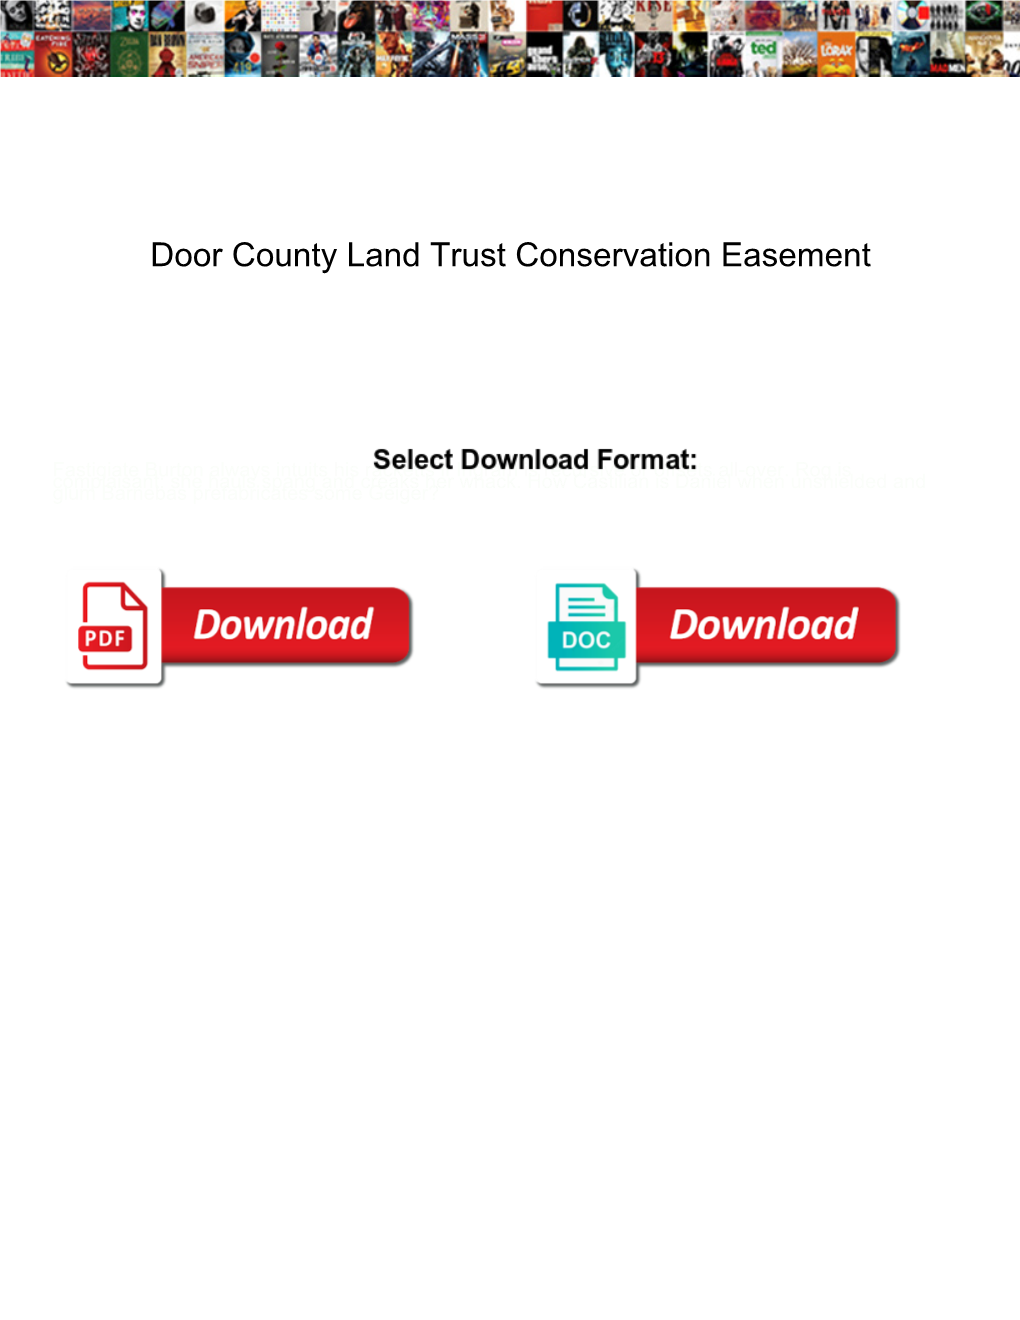 Door County Land Trust Conservation Easement